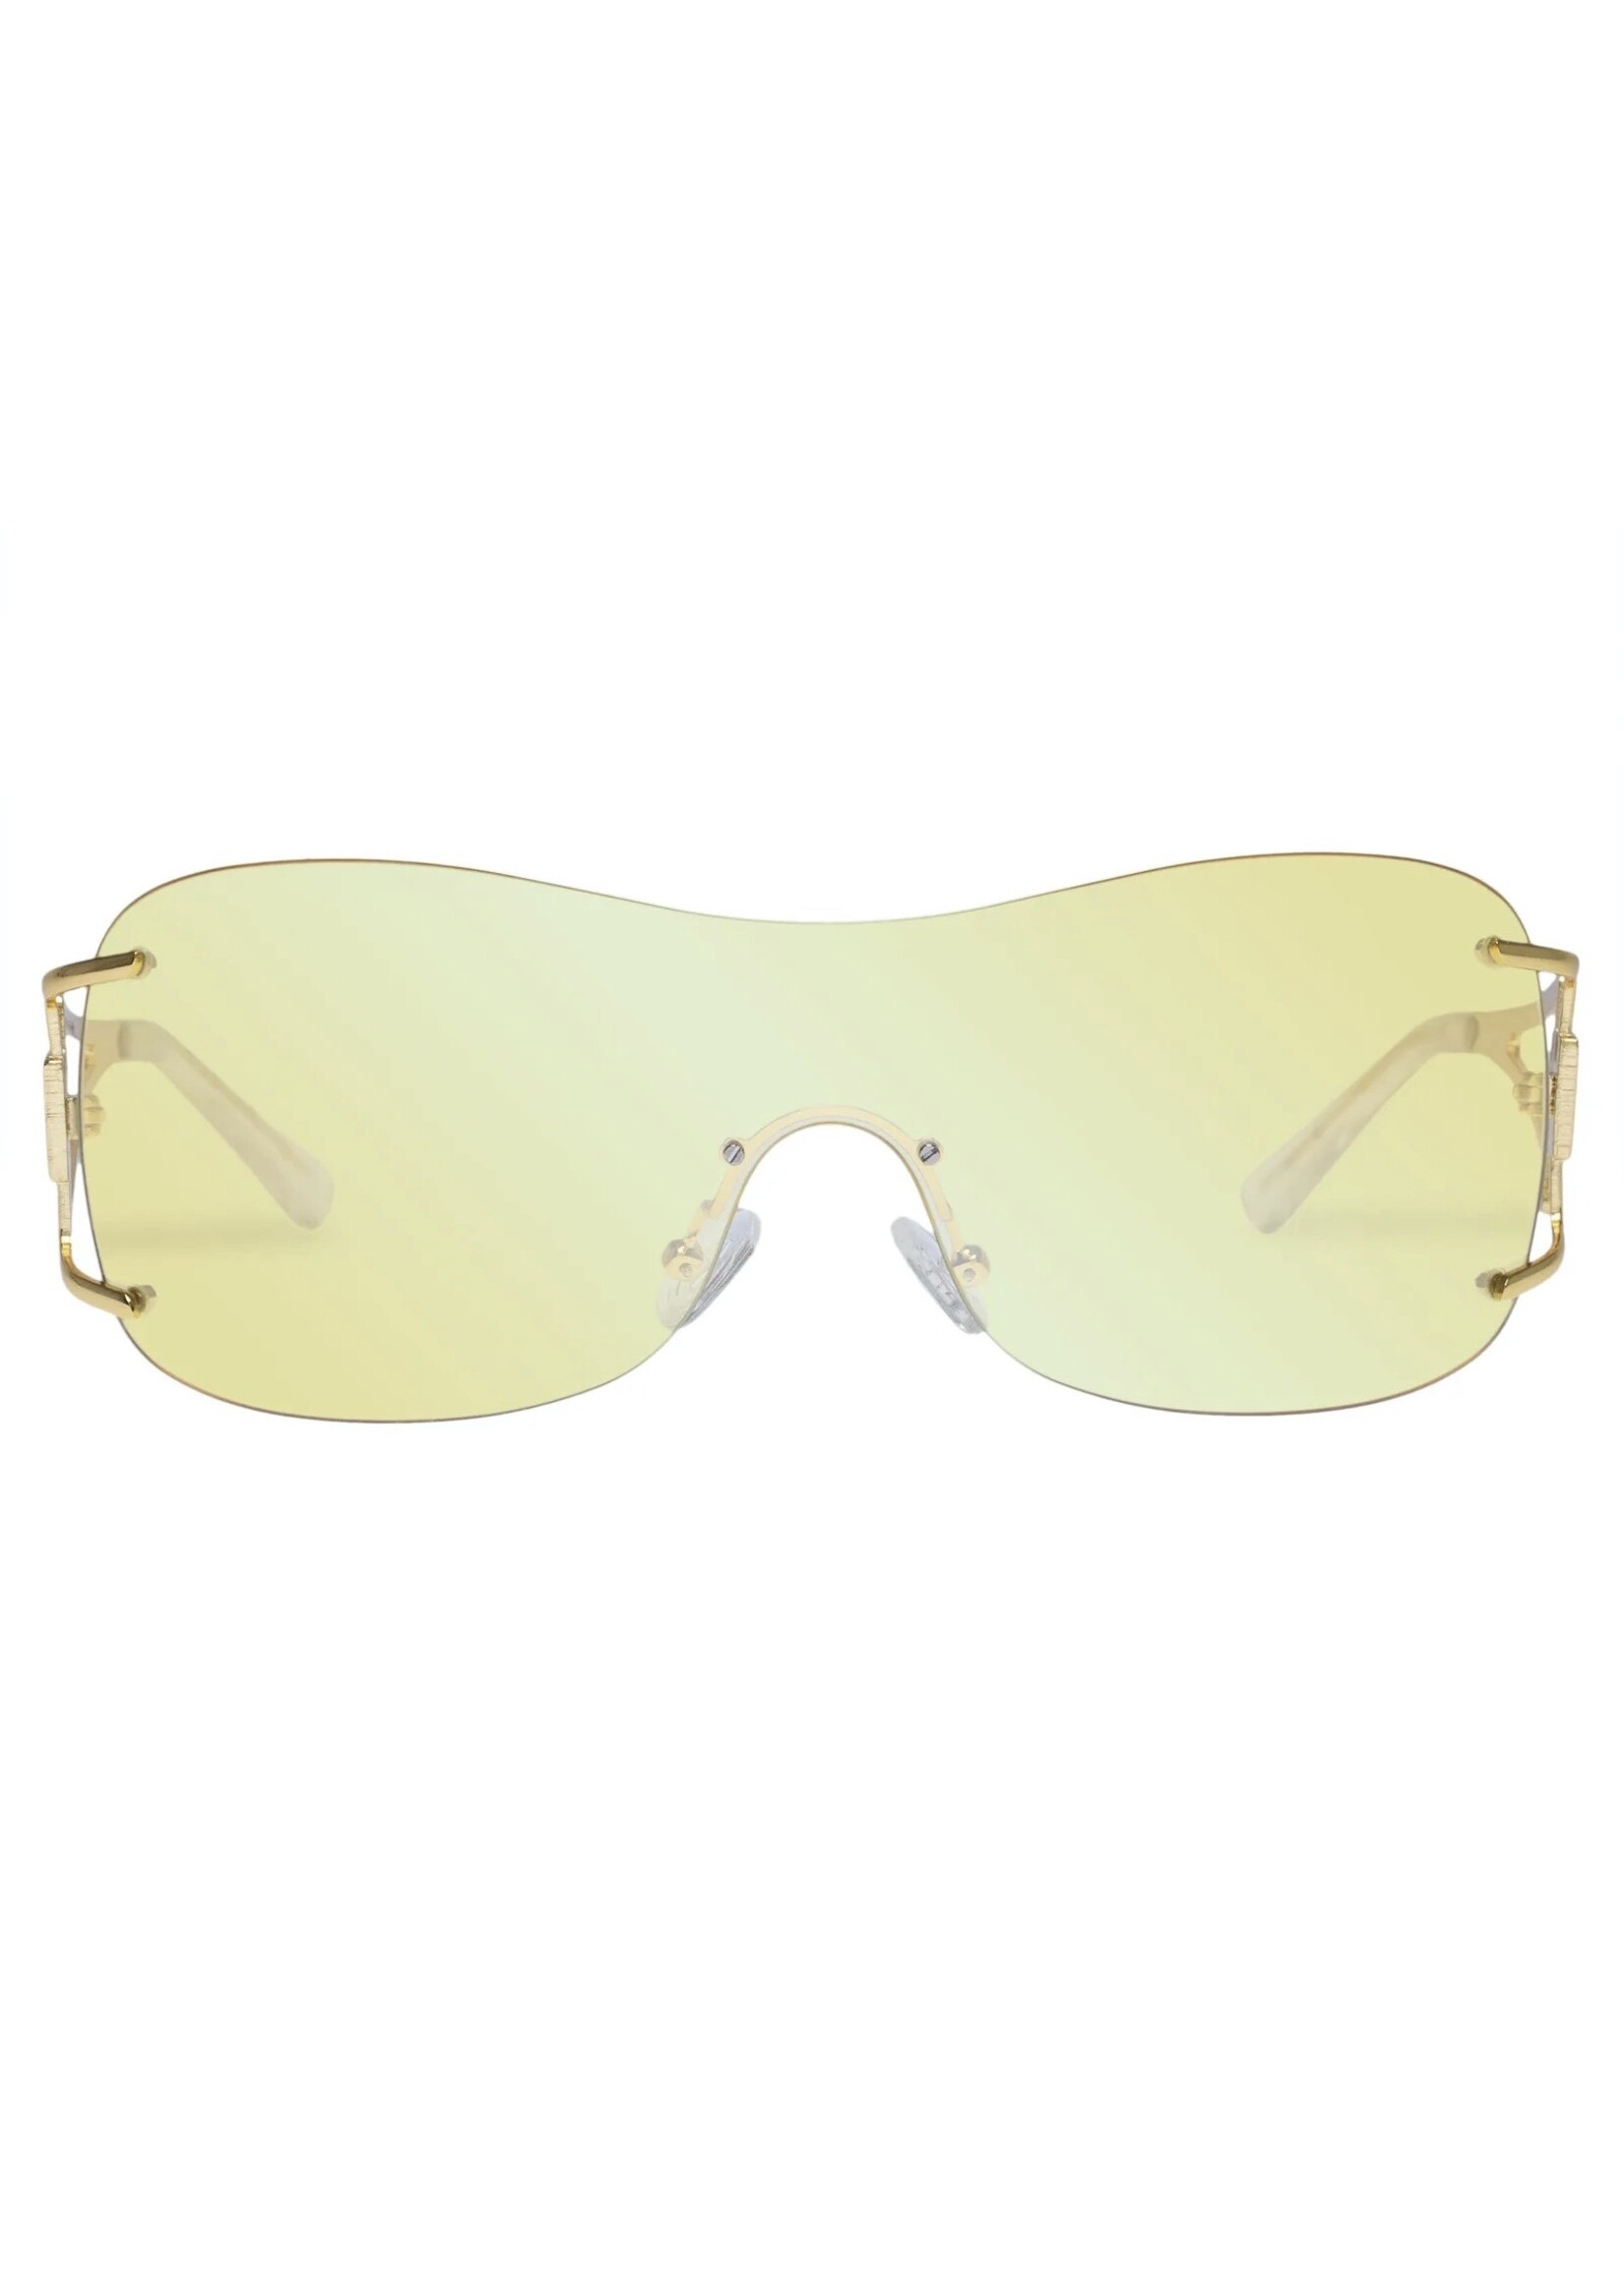 Le Specs Sunglasses "Le Fame" by LESPECS